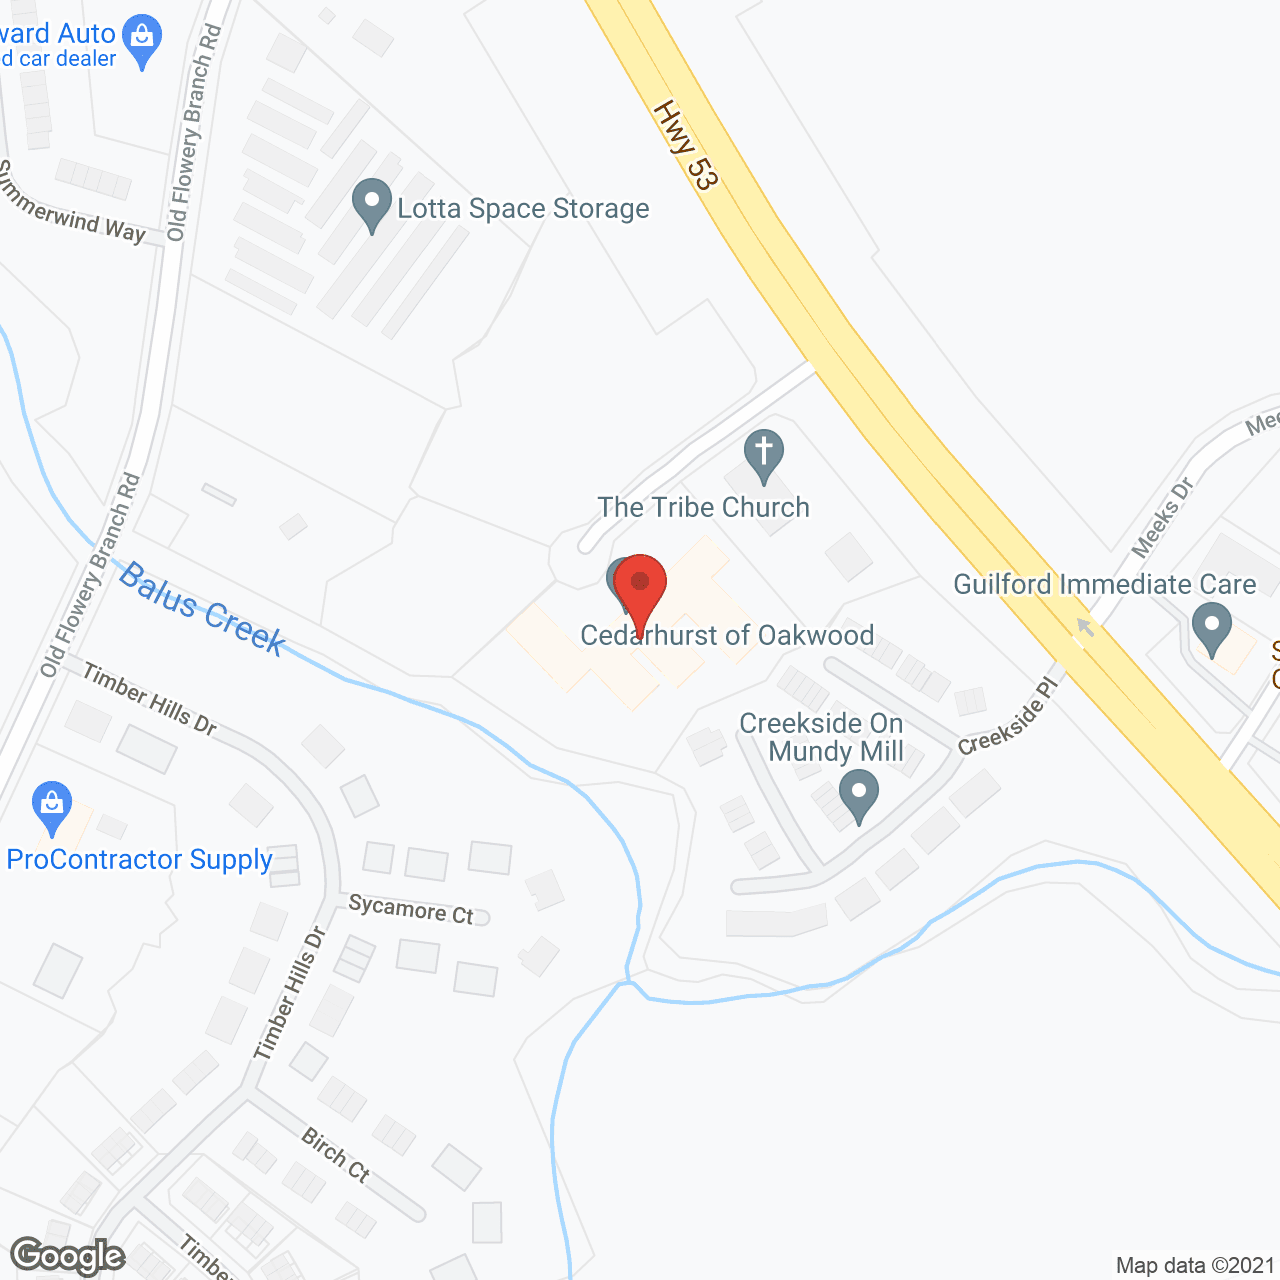 Cedarhurst of Oakwood in google map